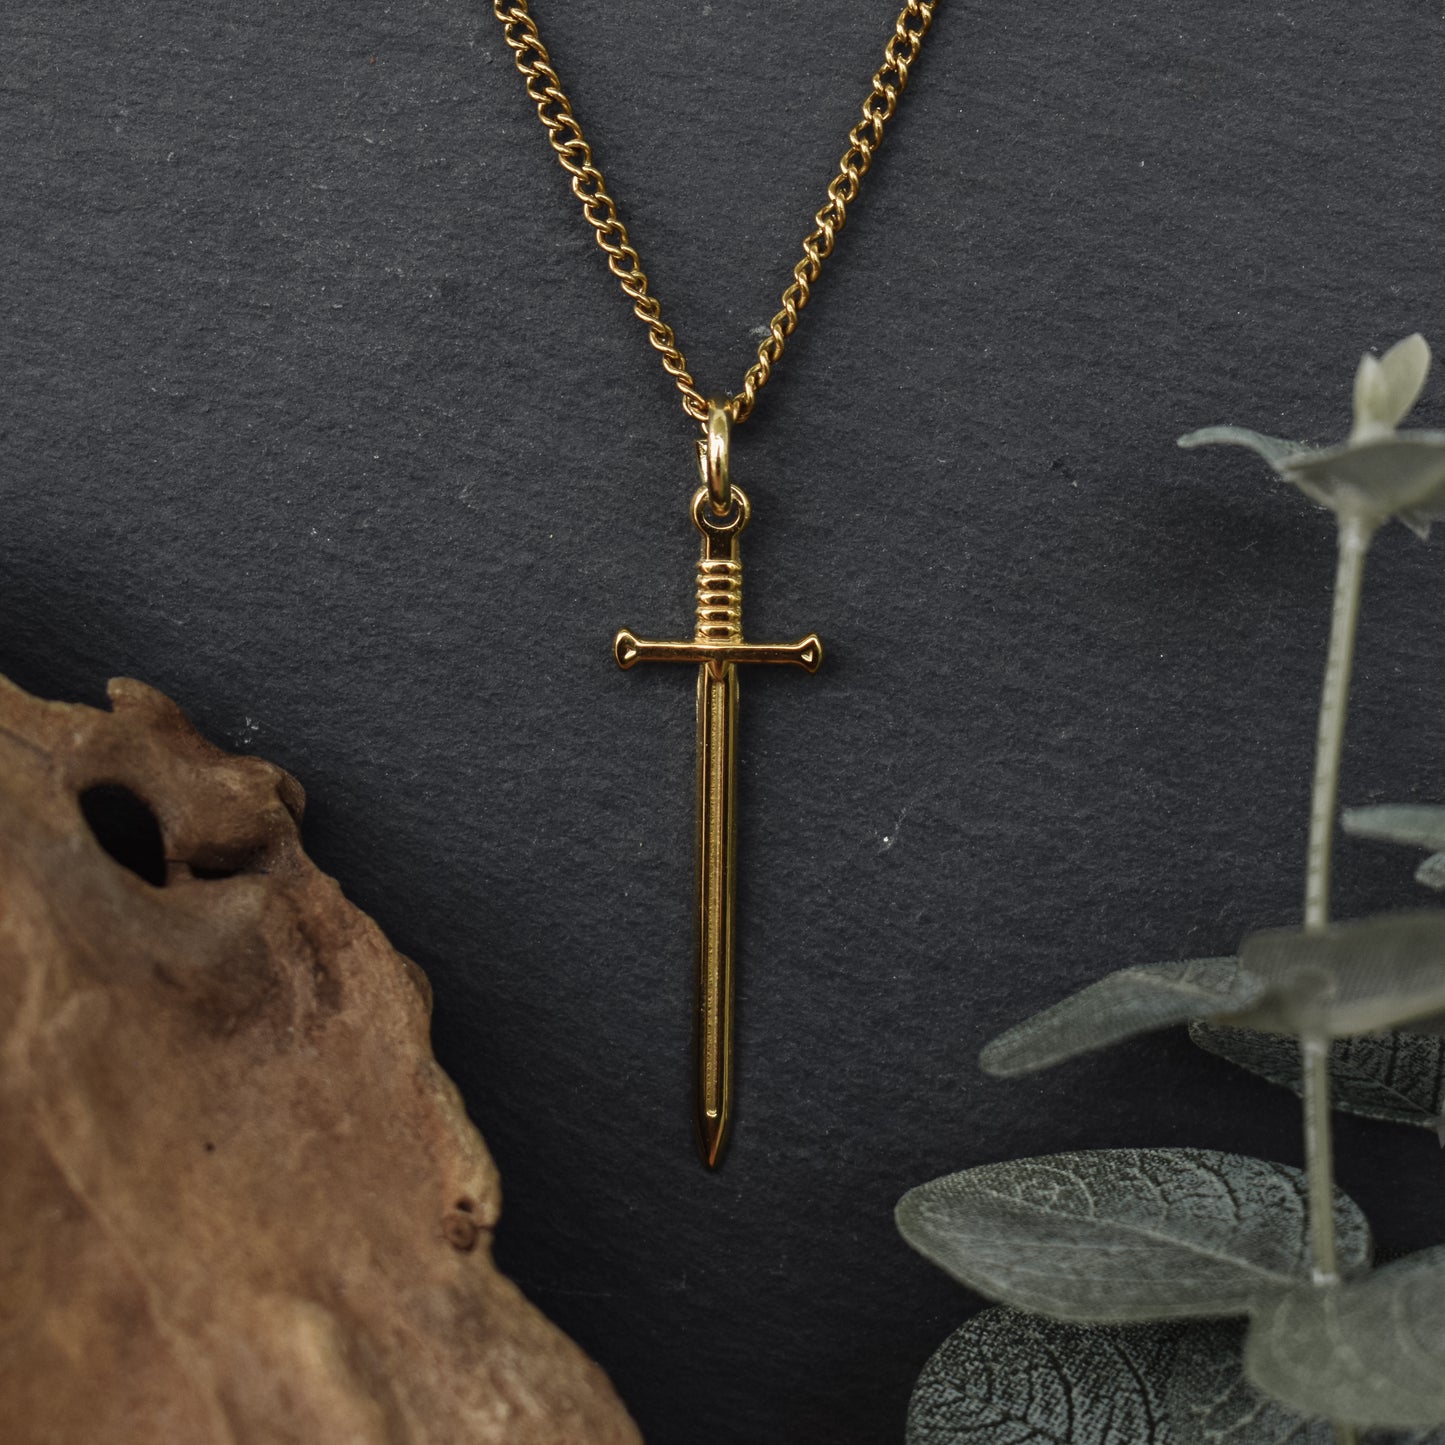 Golden Sword Necklace